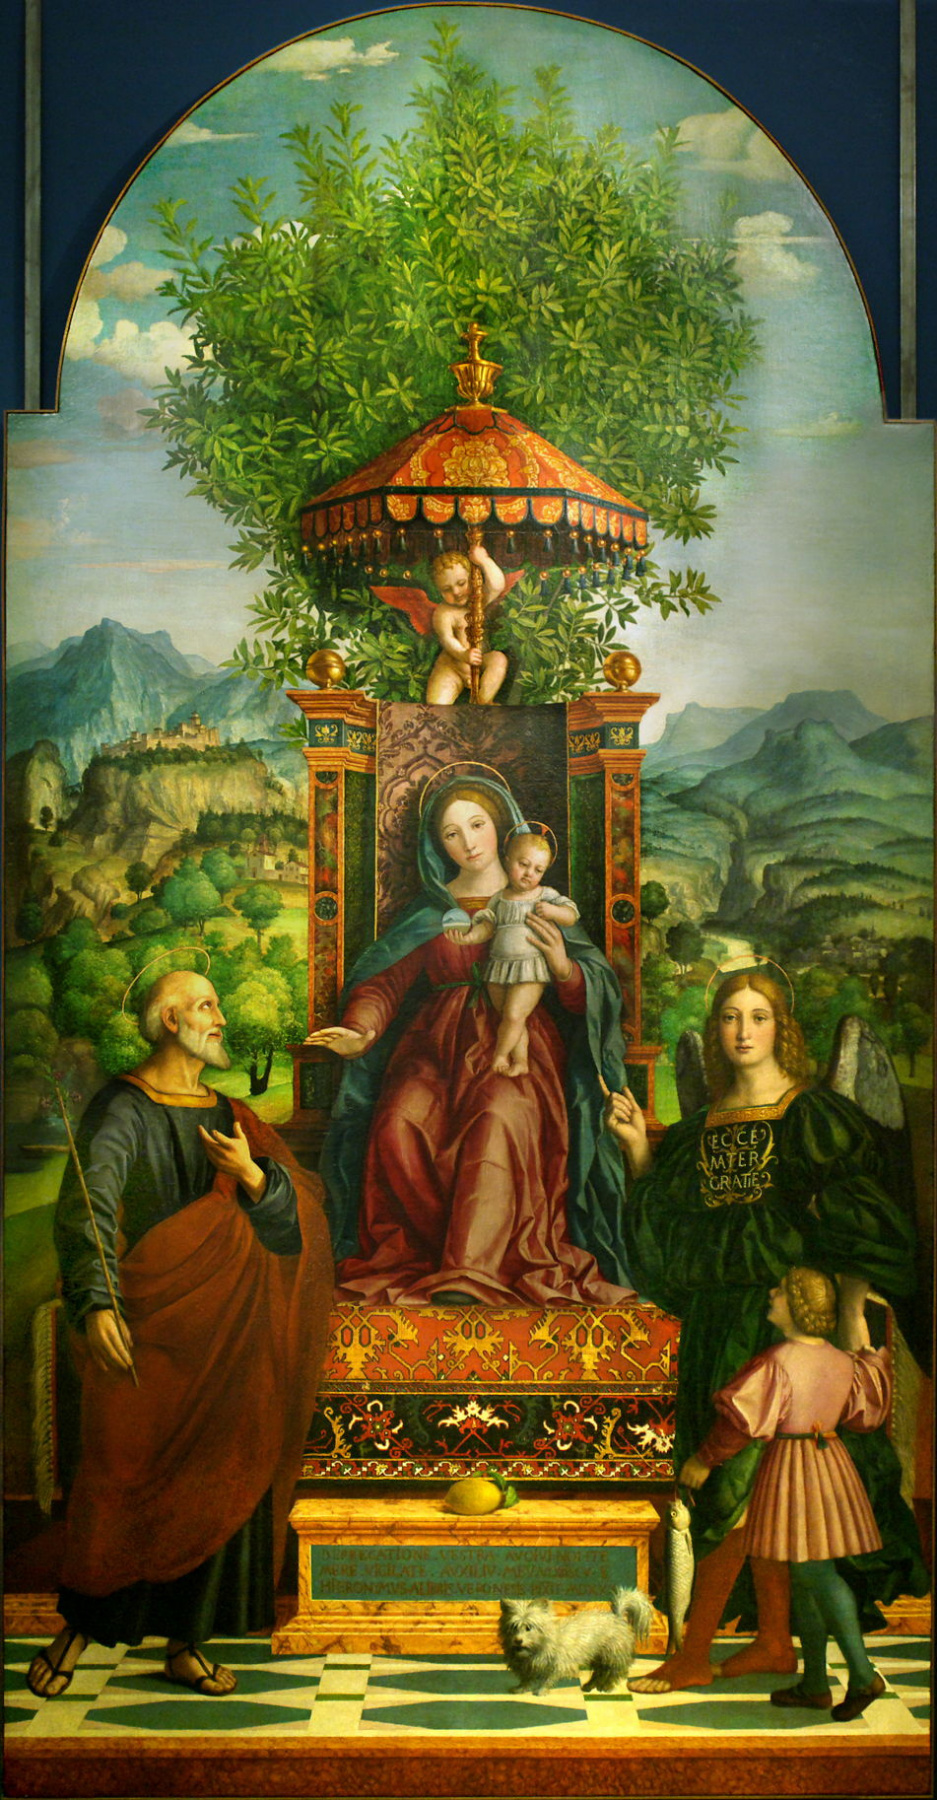 Джироламо даи Либри (Girolamo dai Libri). Мадонна с Иисусом на троне в окружении Святого Иосифа, Архангела Рафаила и Товии